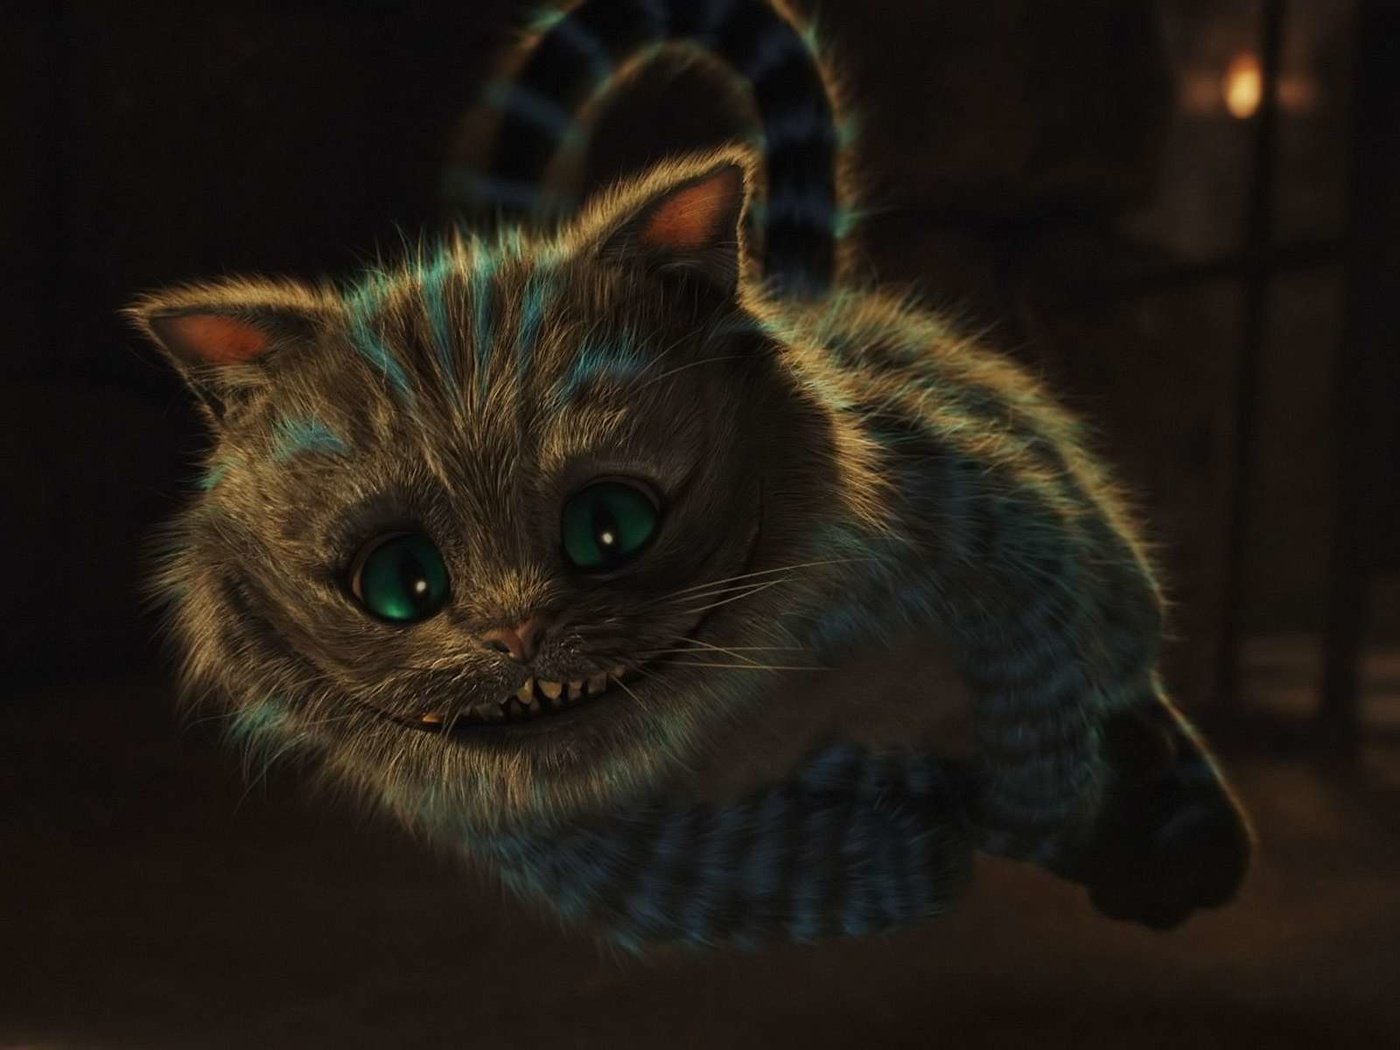 Чишминский кот Алиса в стоане чудес